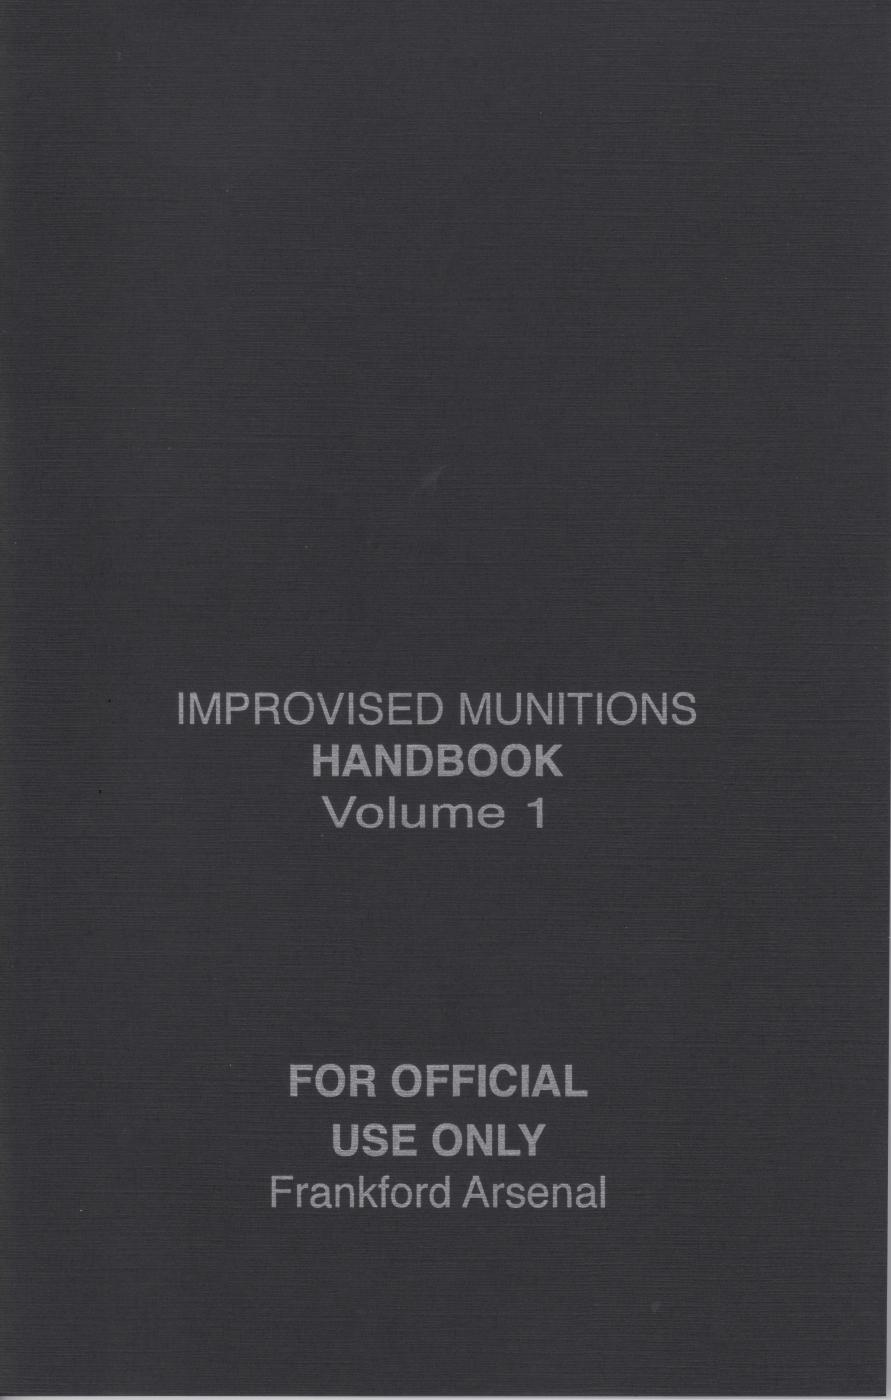 IMPROVISED MUNITIONS Handbook Vol. 2